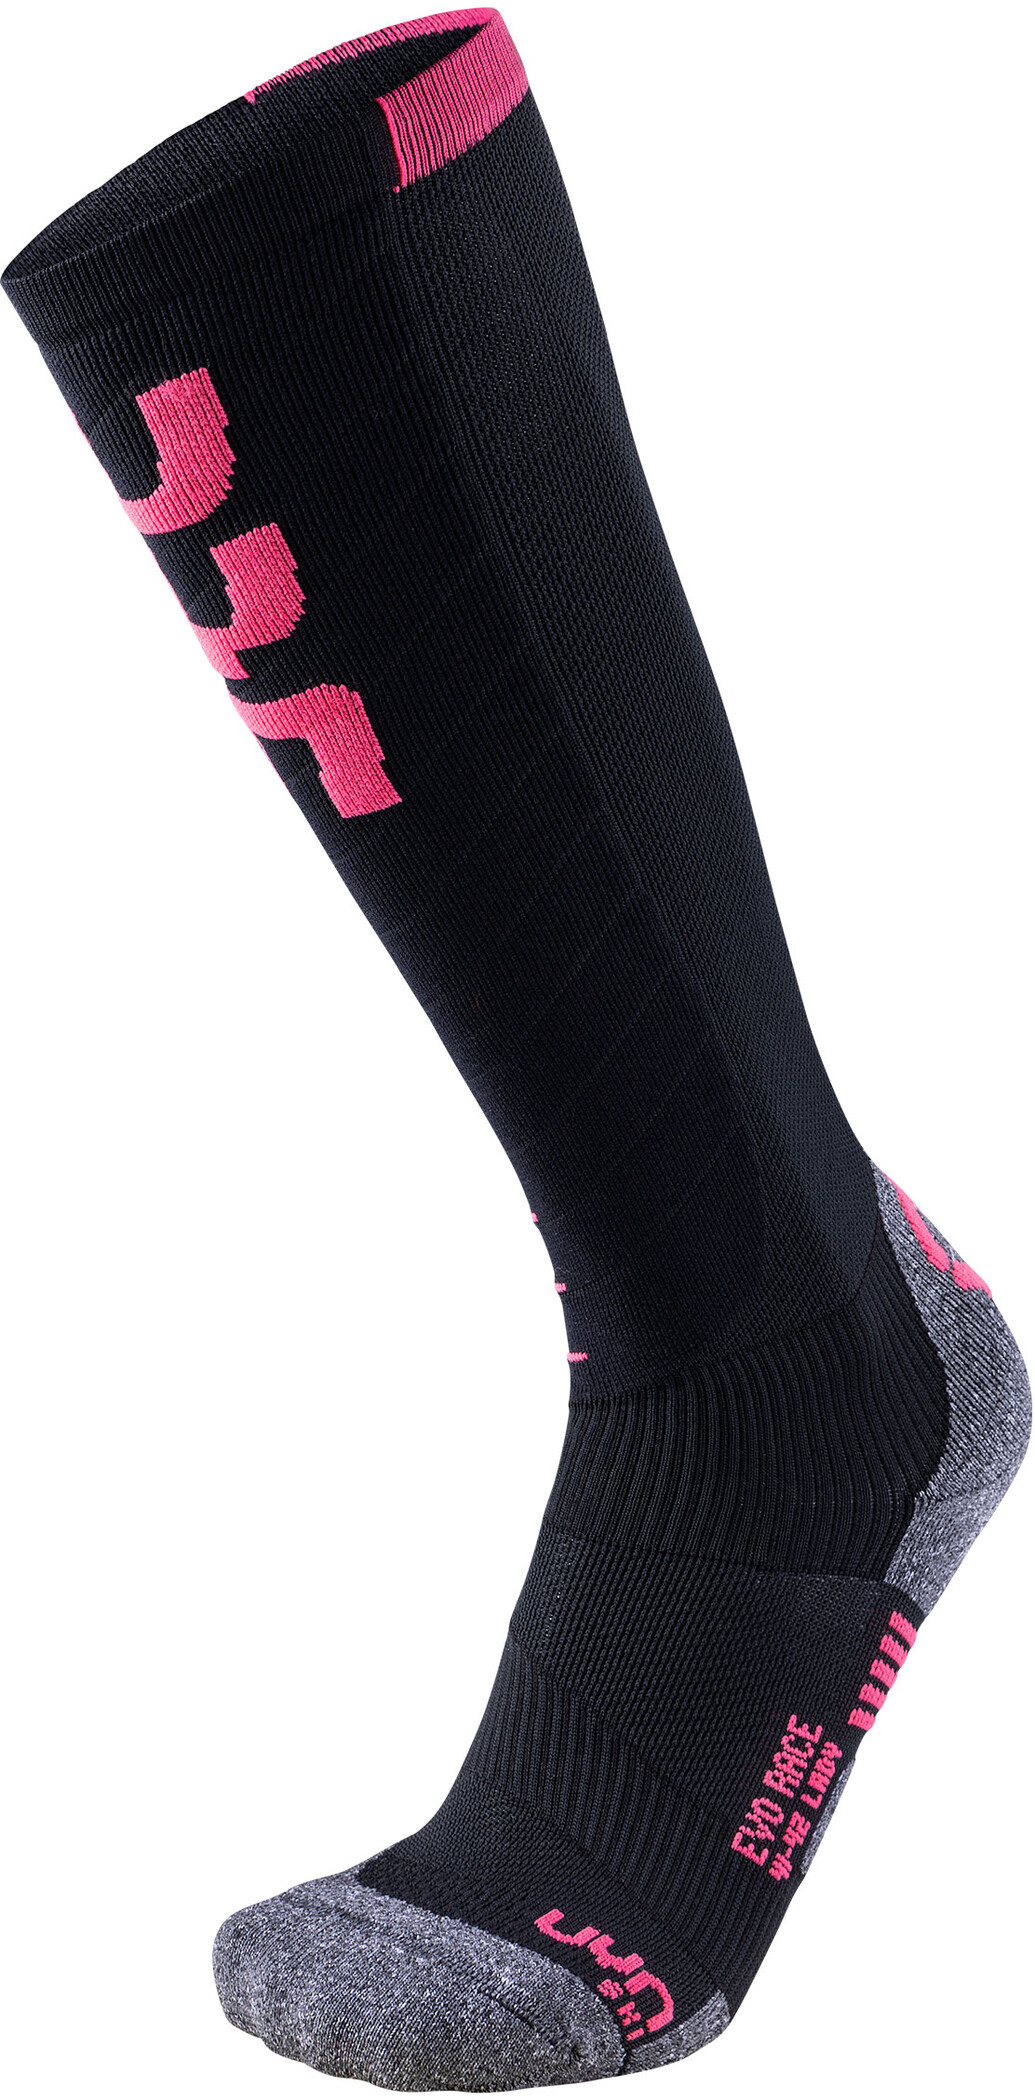 UYN Evo Race Ski Socken Damen schwarz/pink